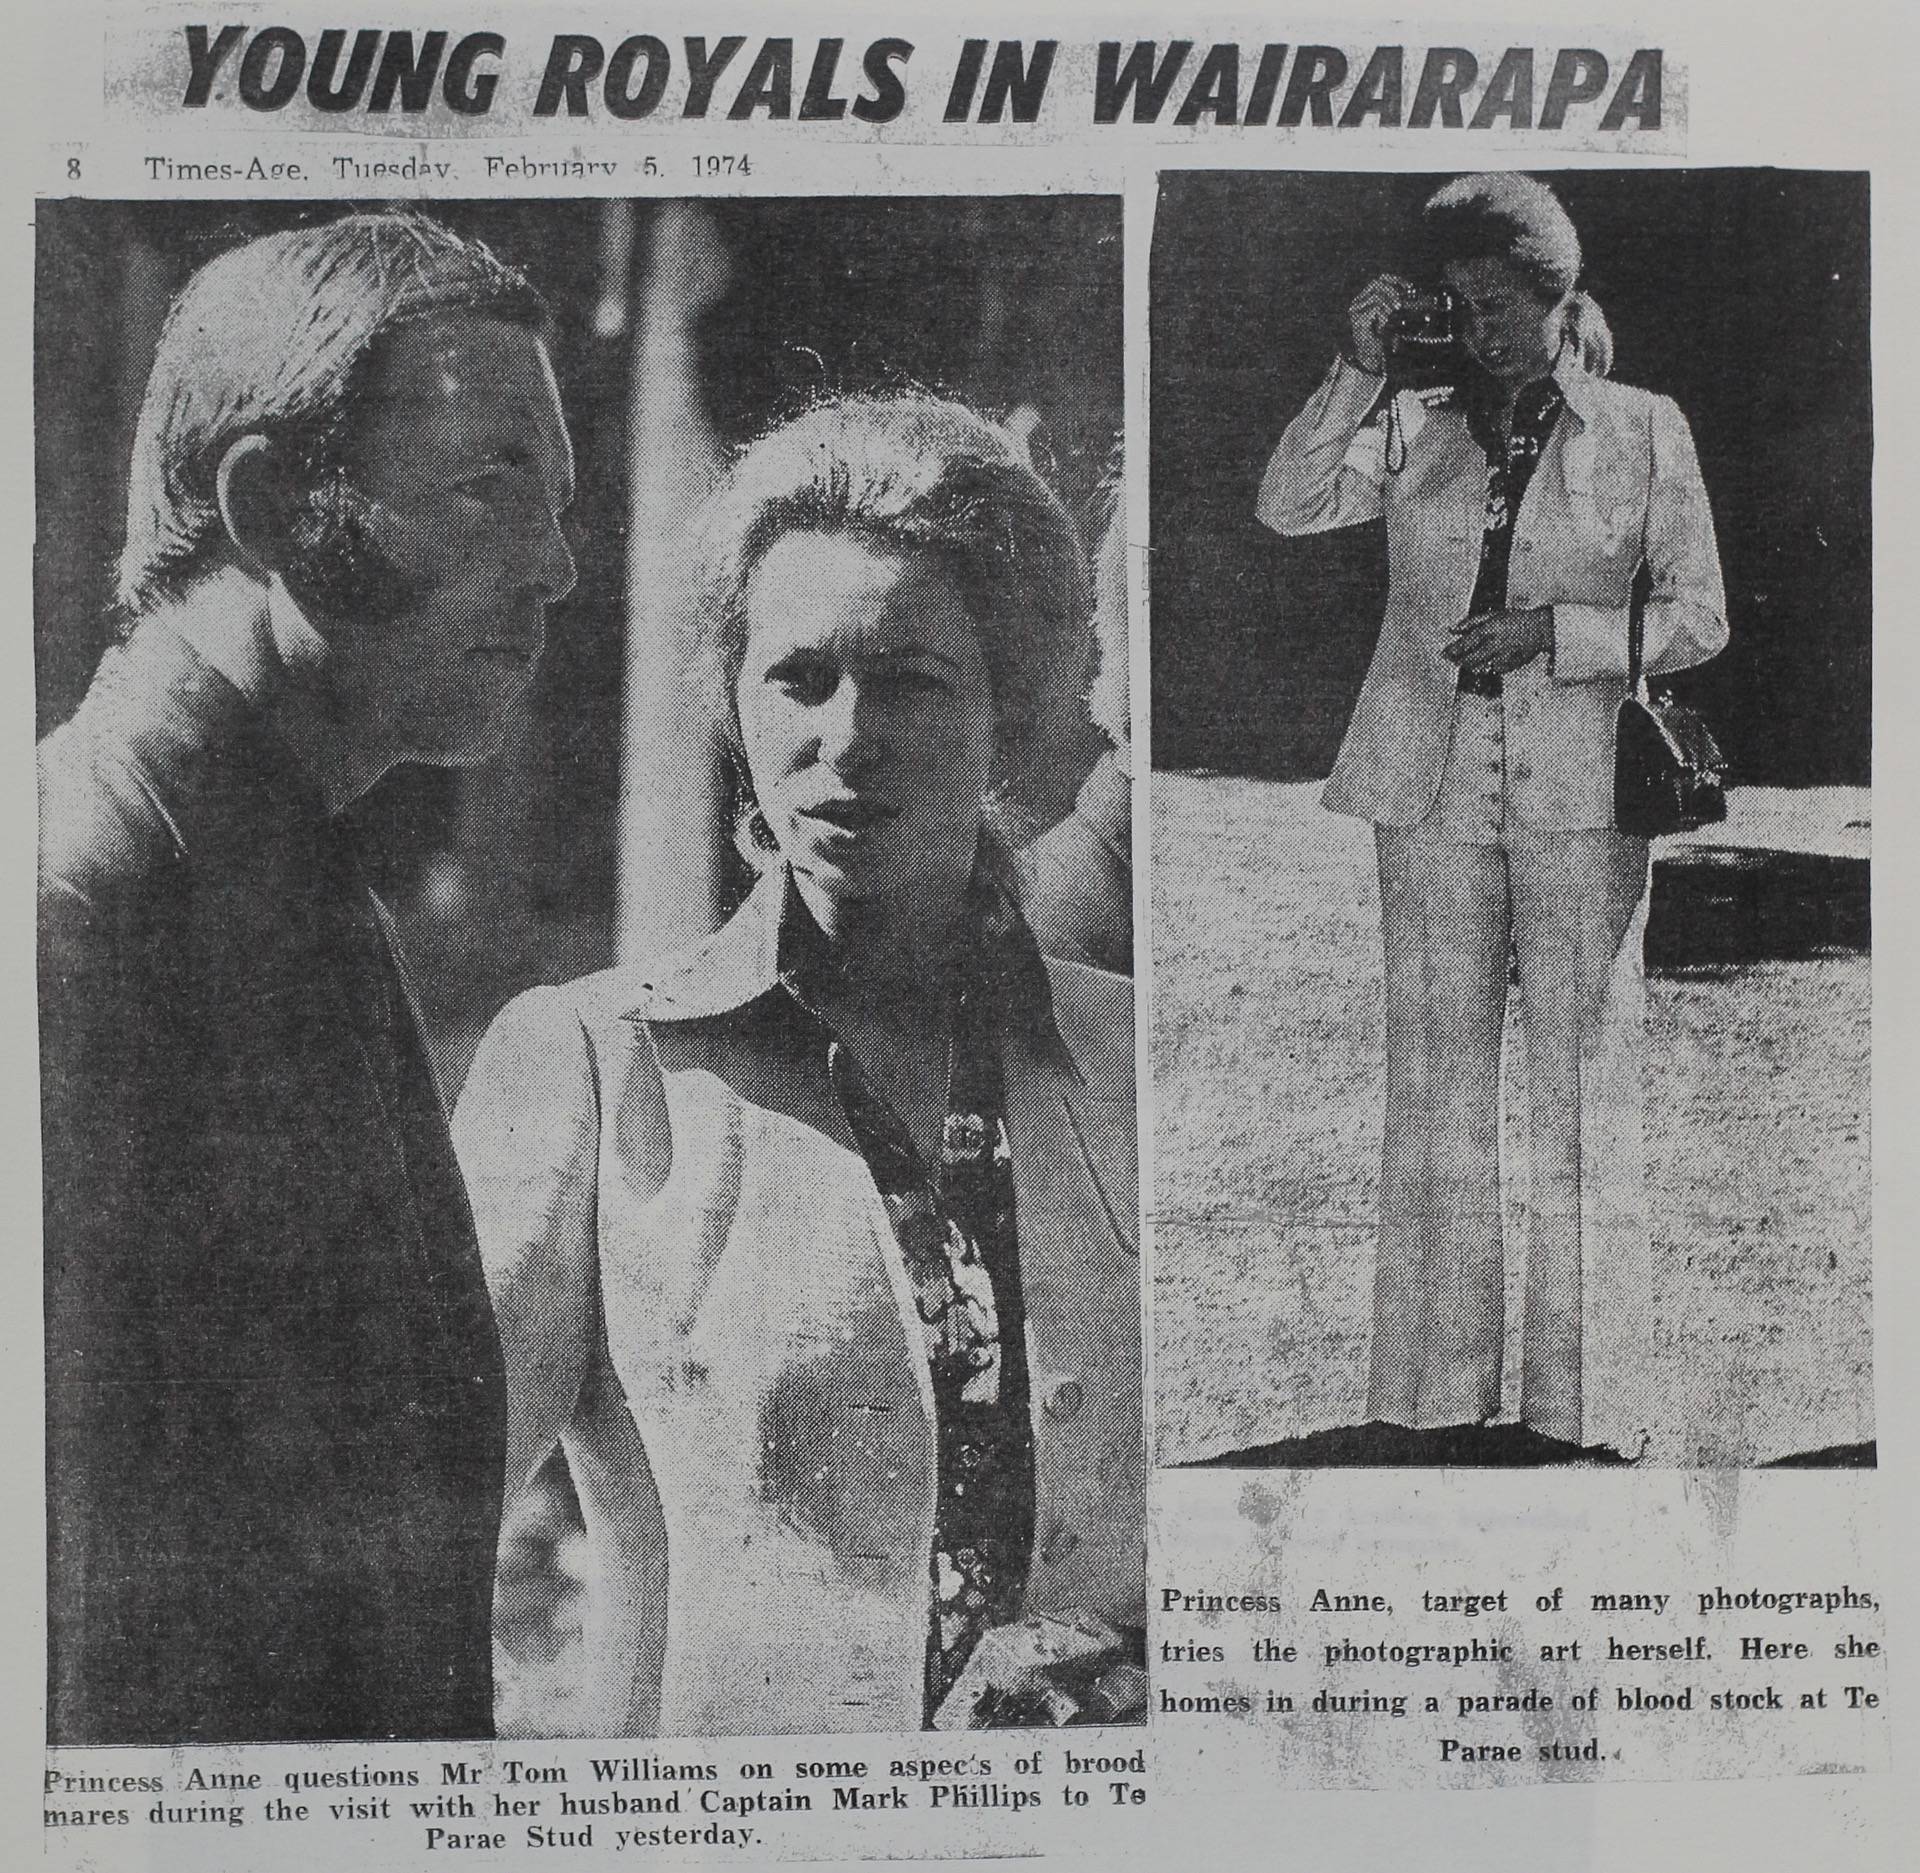 Young Royals in Wairarapa